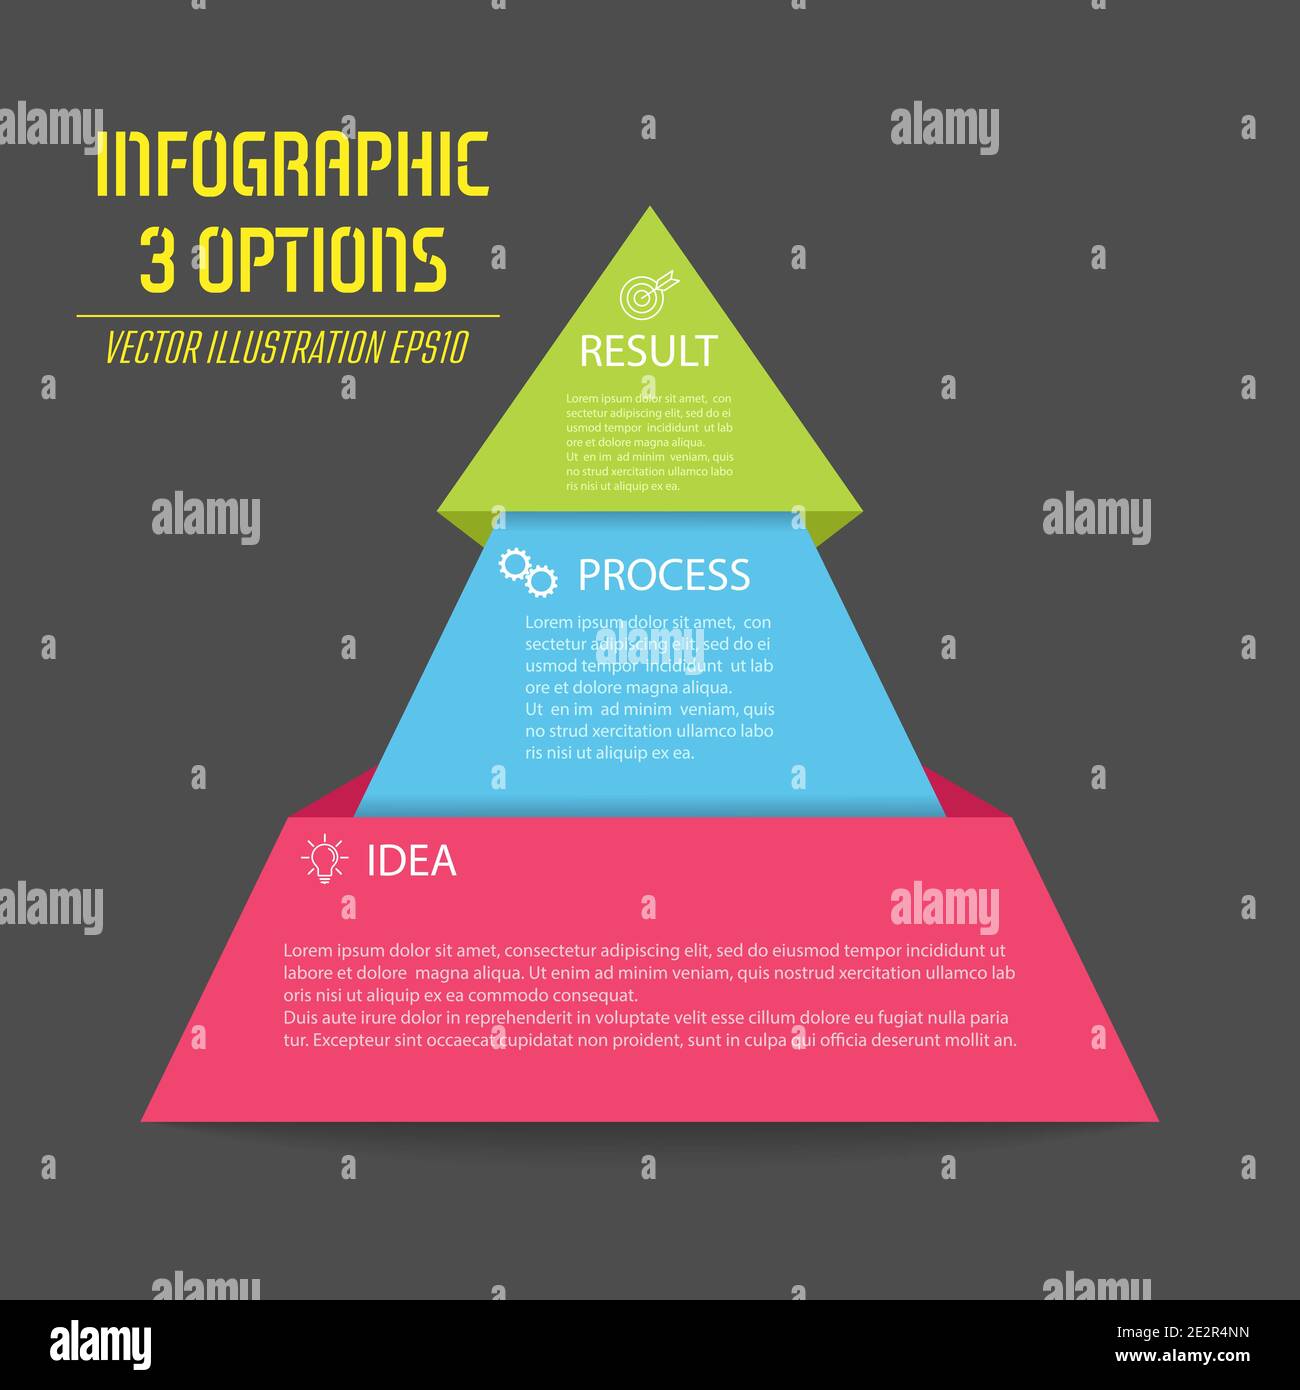 Pyramide de l'infographie. Le diagramme triangulaire est divisé en